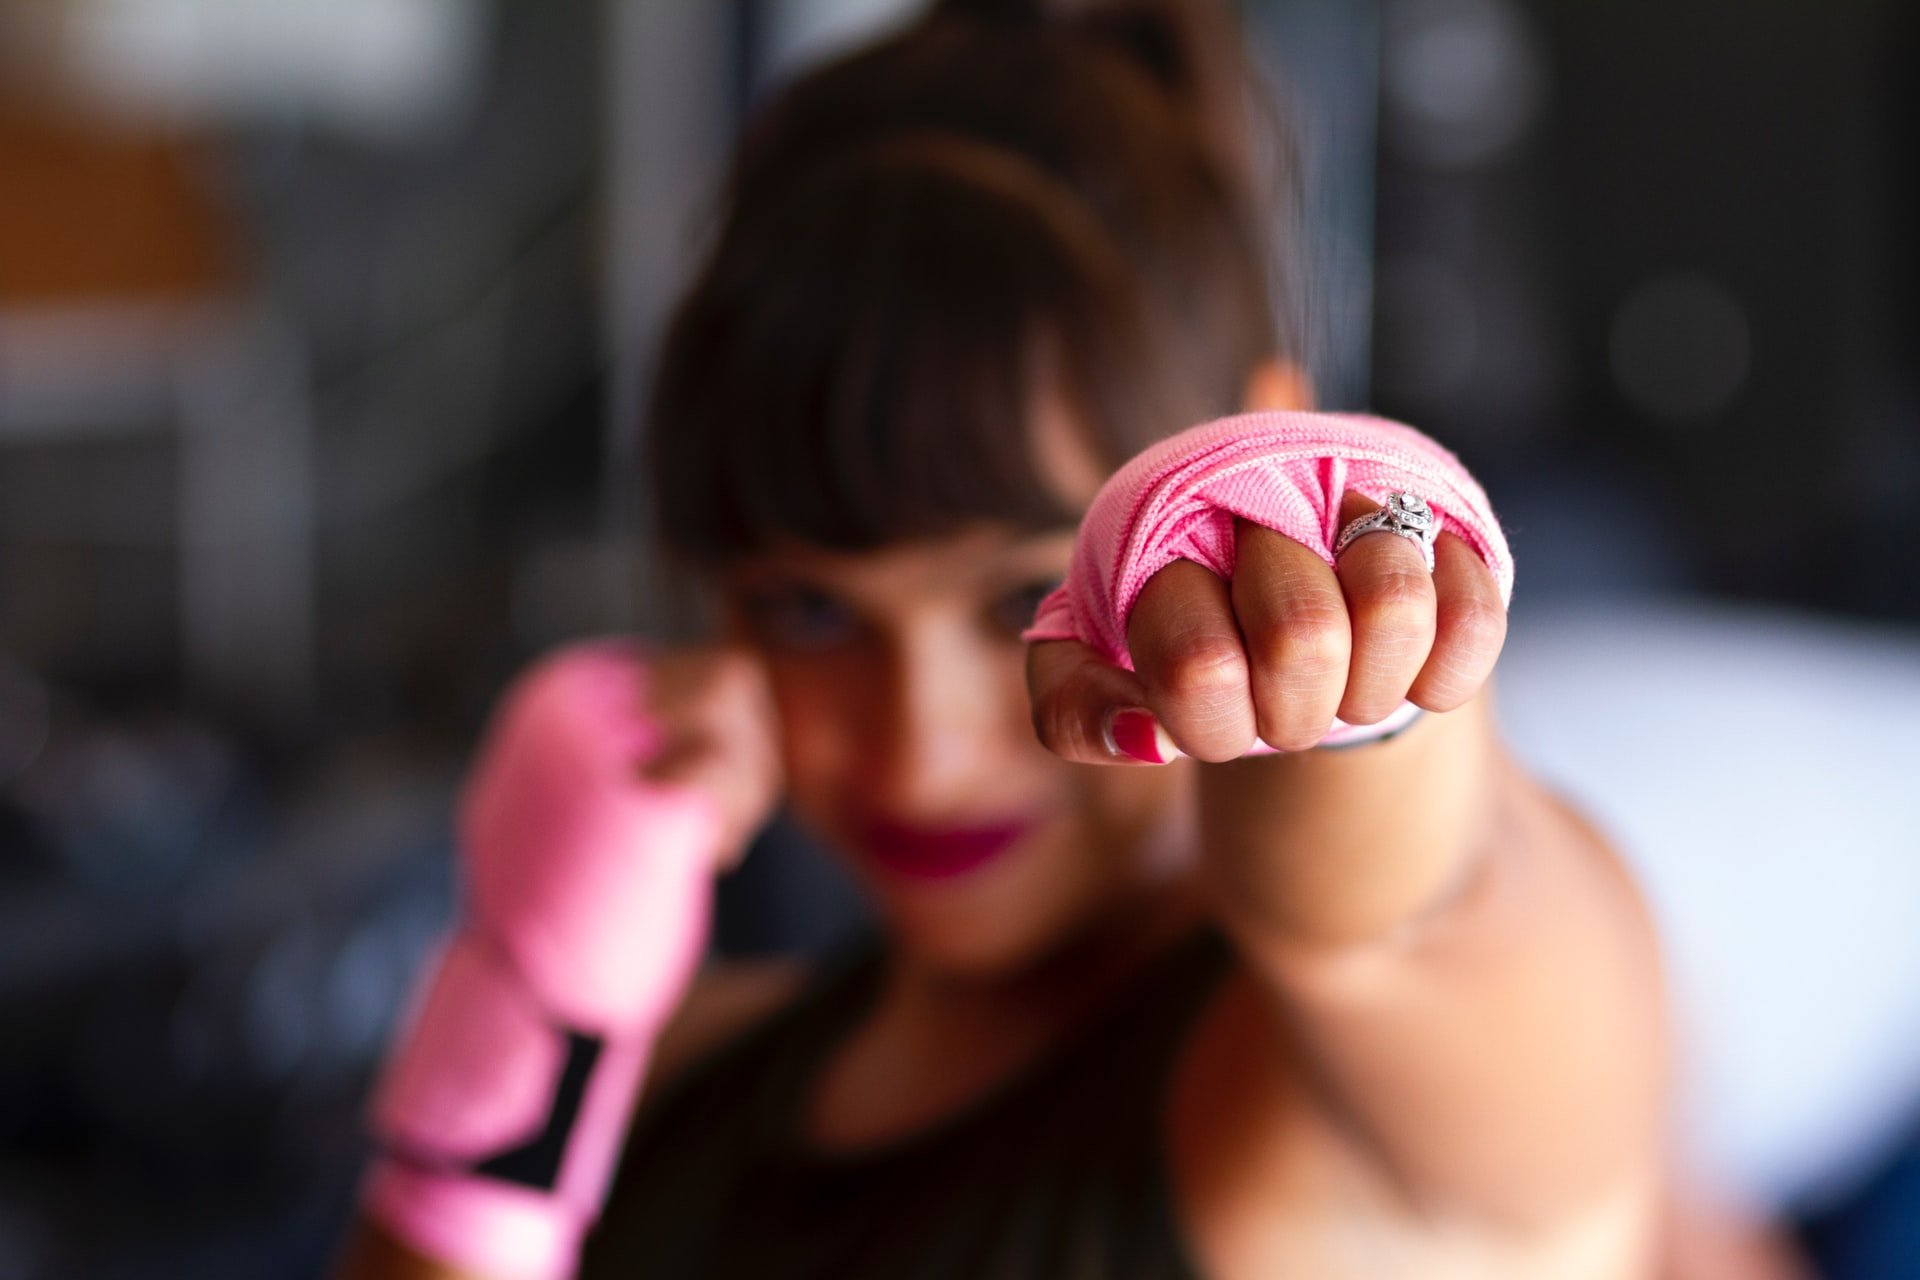 Mulher, lutadora, com as mãos enroladas em faixas cor de rosa para colocar luva de box.